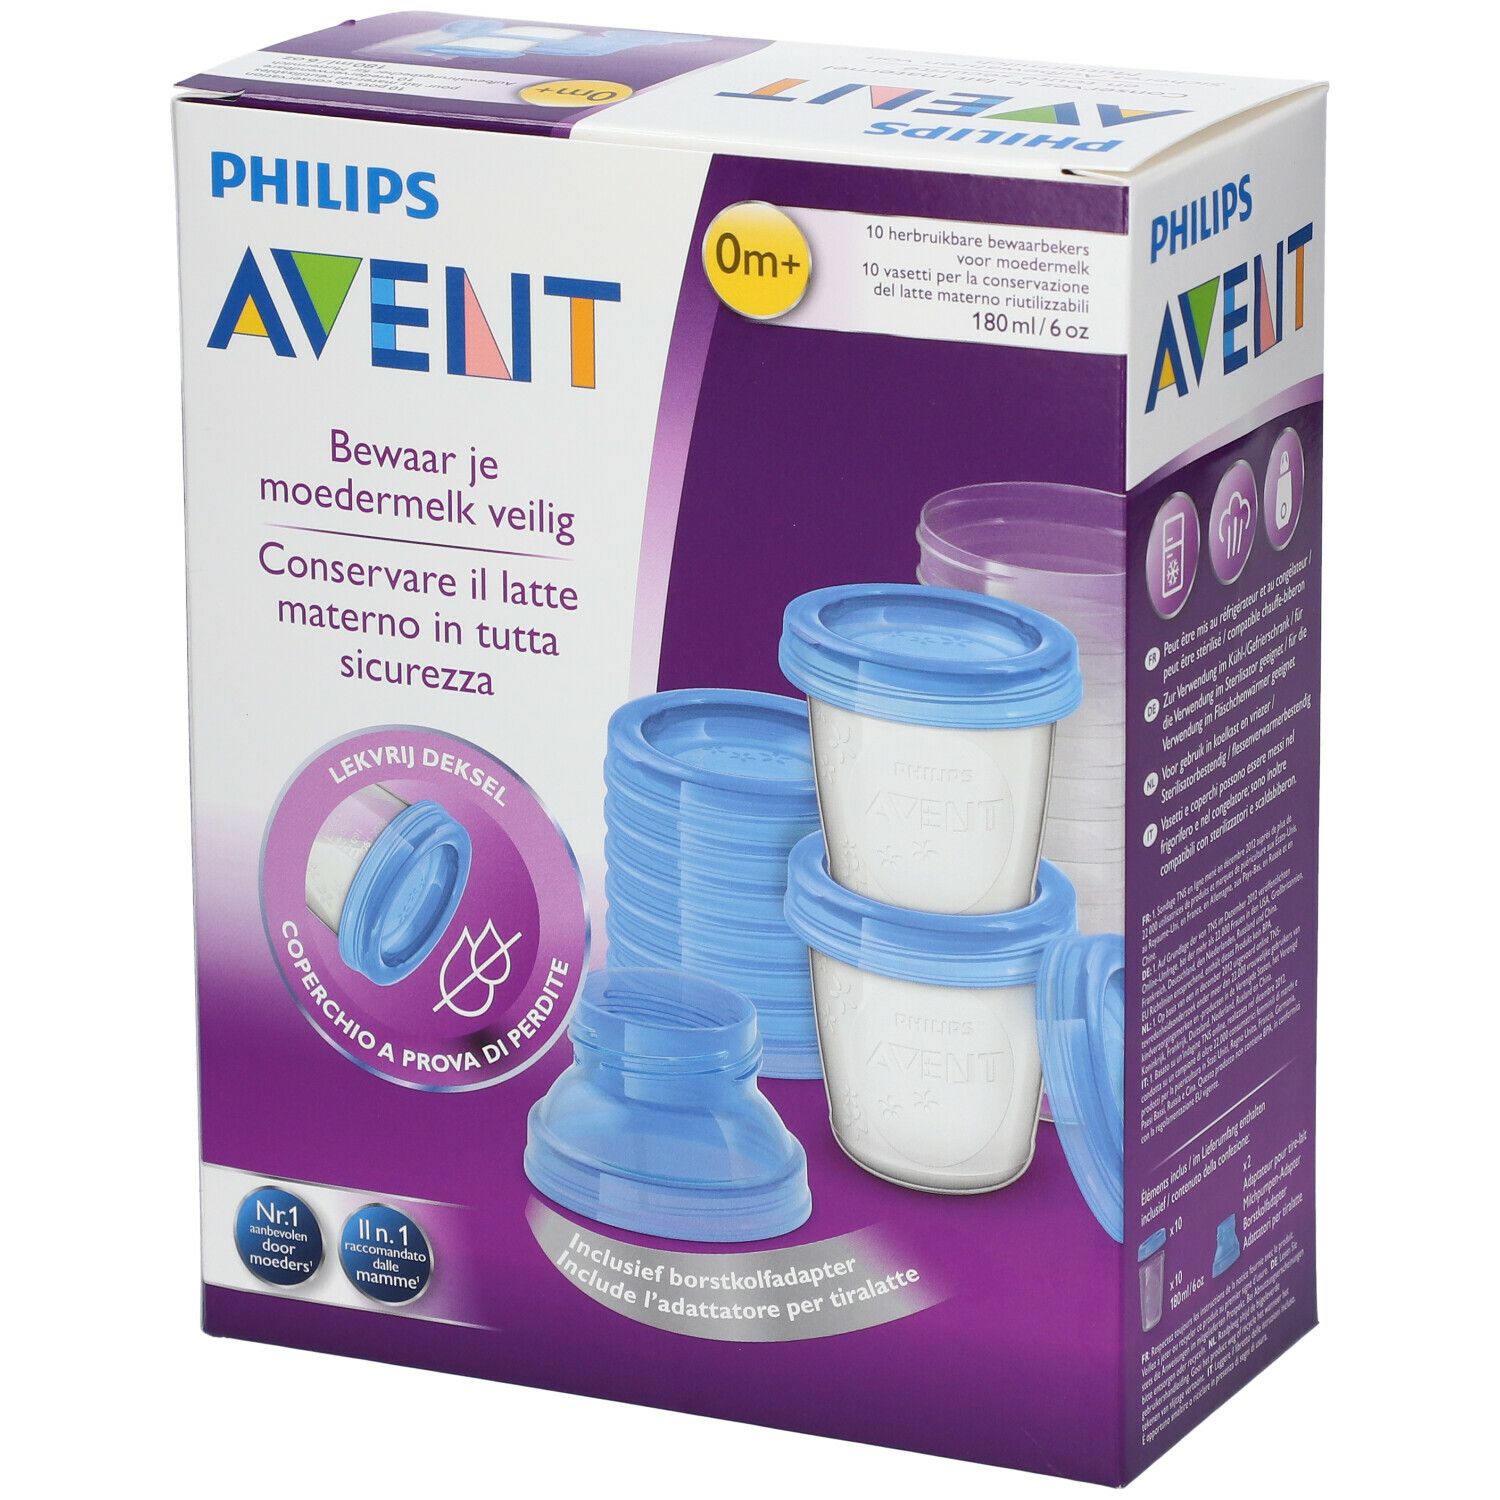 Philips Avent 10 Gläser zur Aufbewahrung von Muttermilch